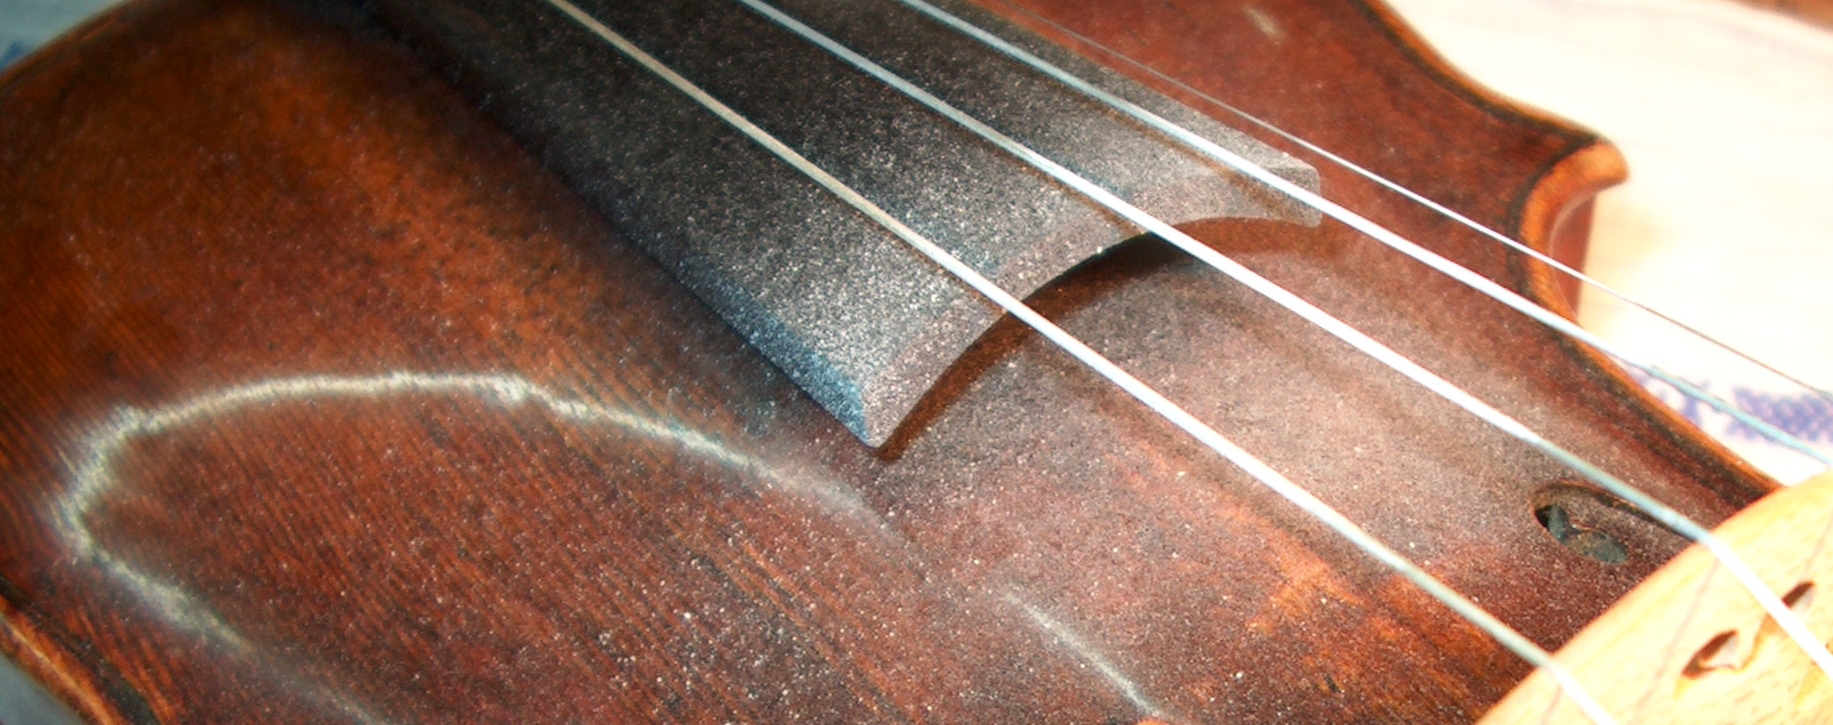 Comment appliquer la colophane sur mon archet violon ?